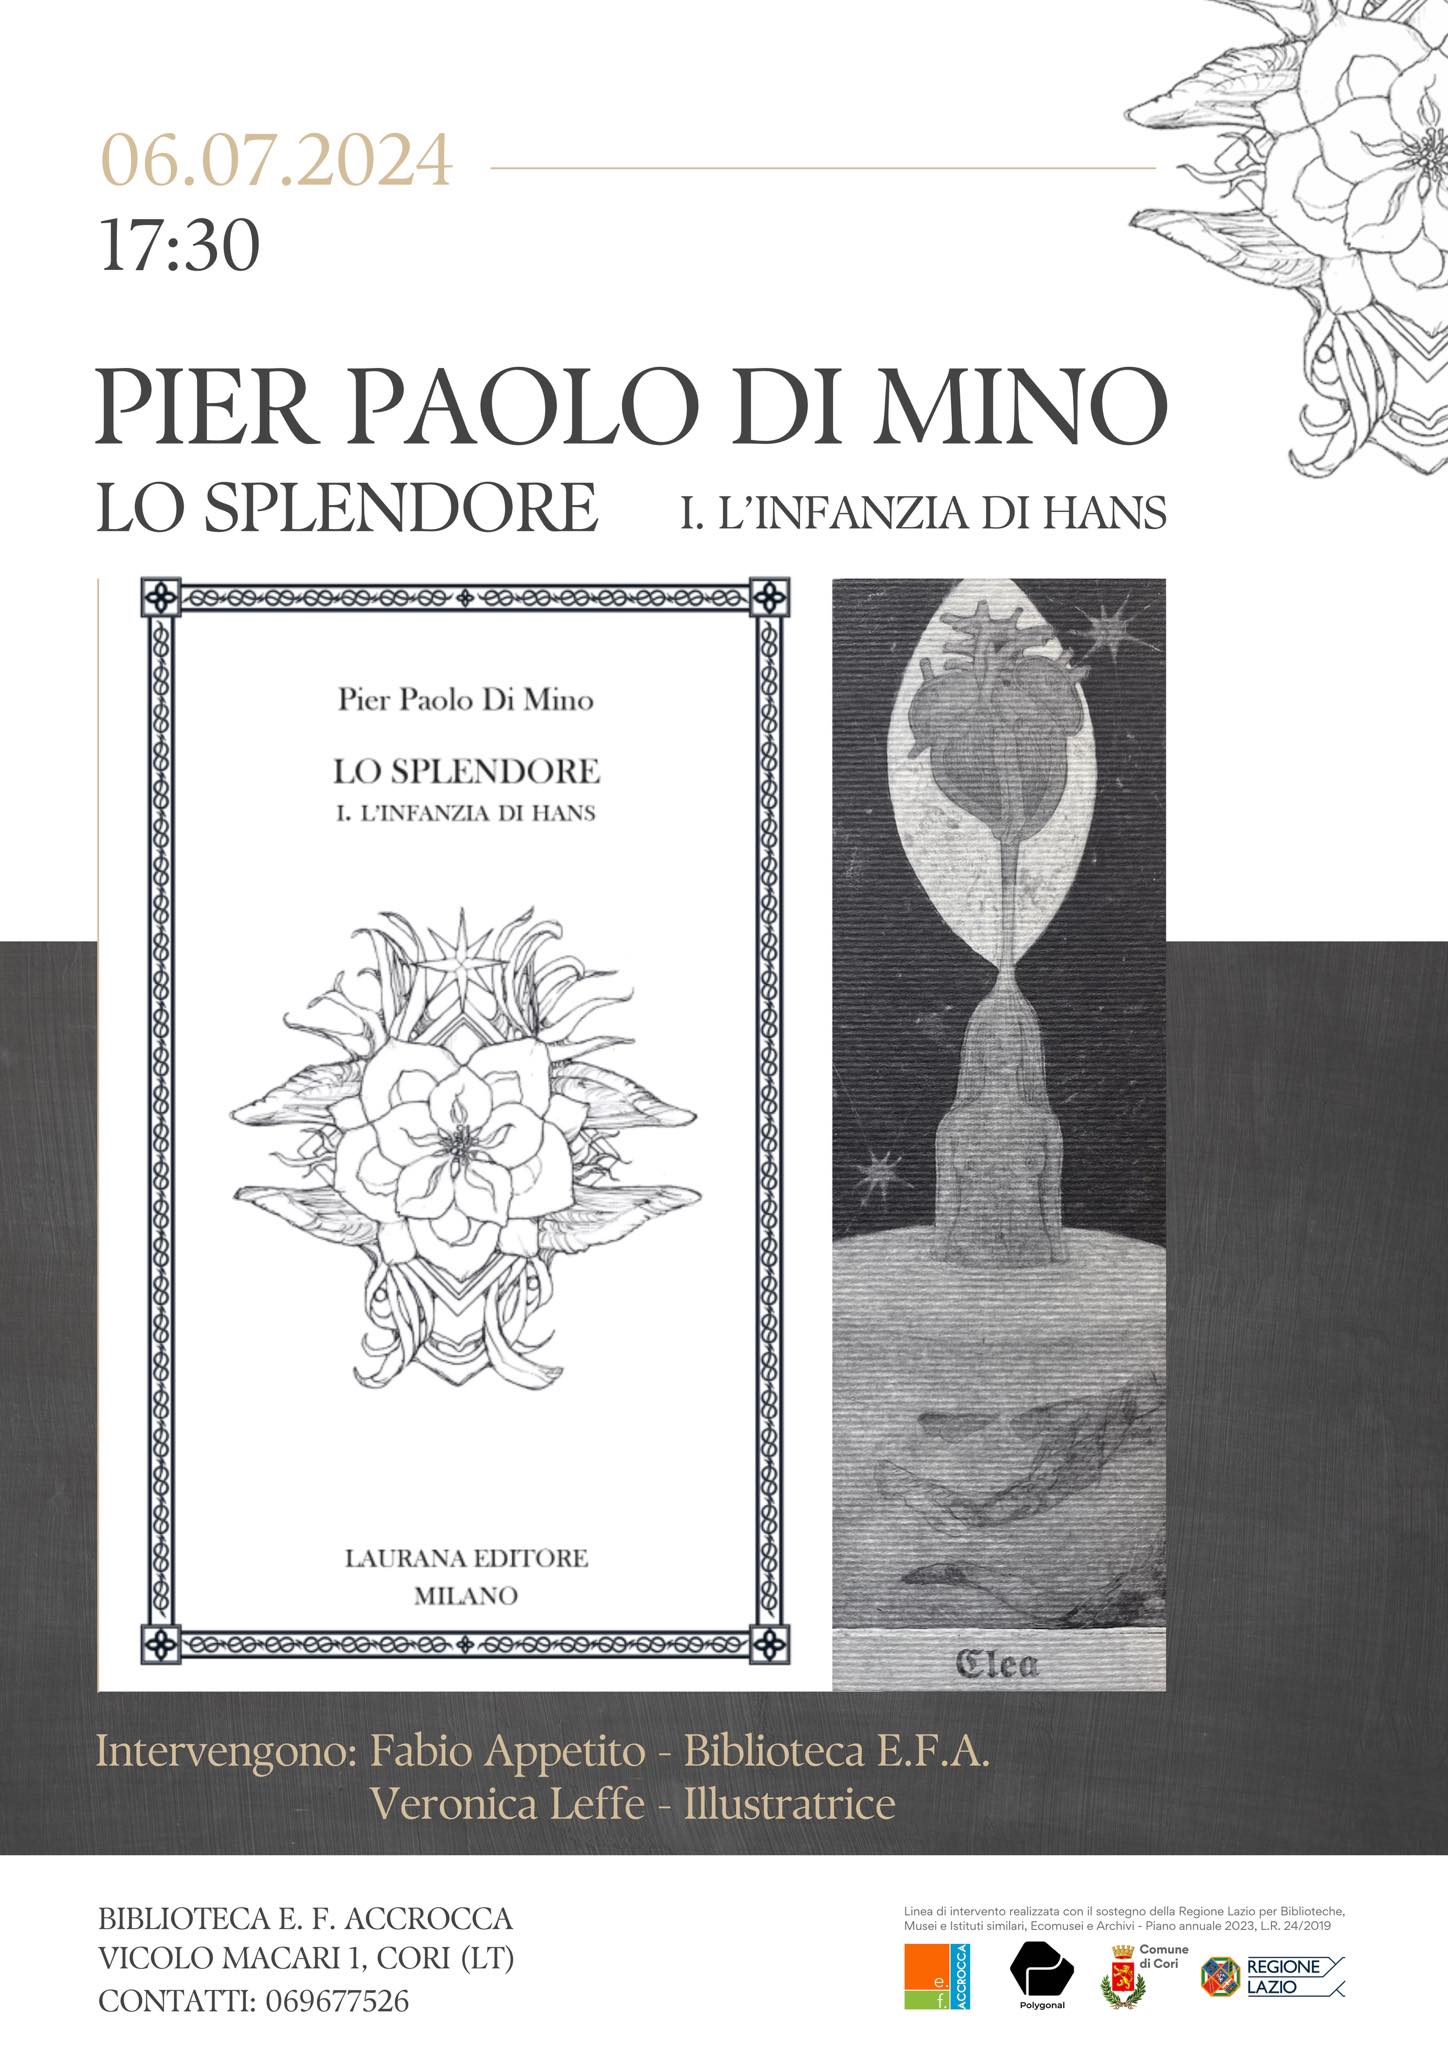 Cori: presentazione del libro "lo splendore" di Pier Paolo di Mino @ biblioteca comunale di Cori